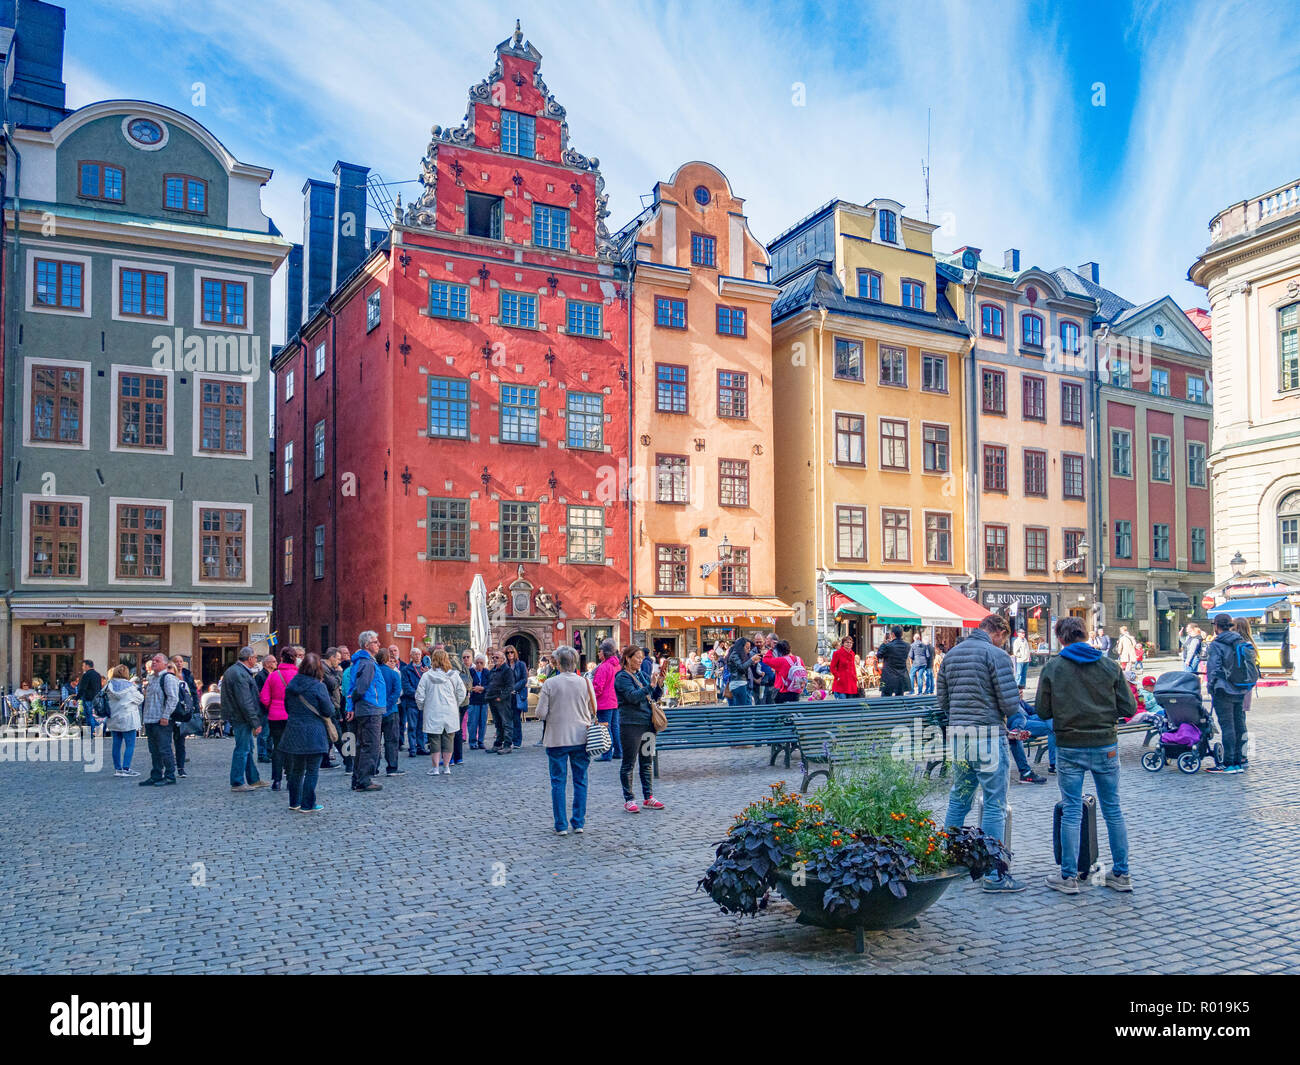 18. September 2018: Stockholm, Schweden - Touristen genießen das Ambiente während der Besichtigung von Stortorget, der älteste Platz der Altstadt Gamla Stan. Stockfoto